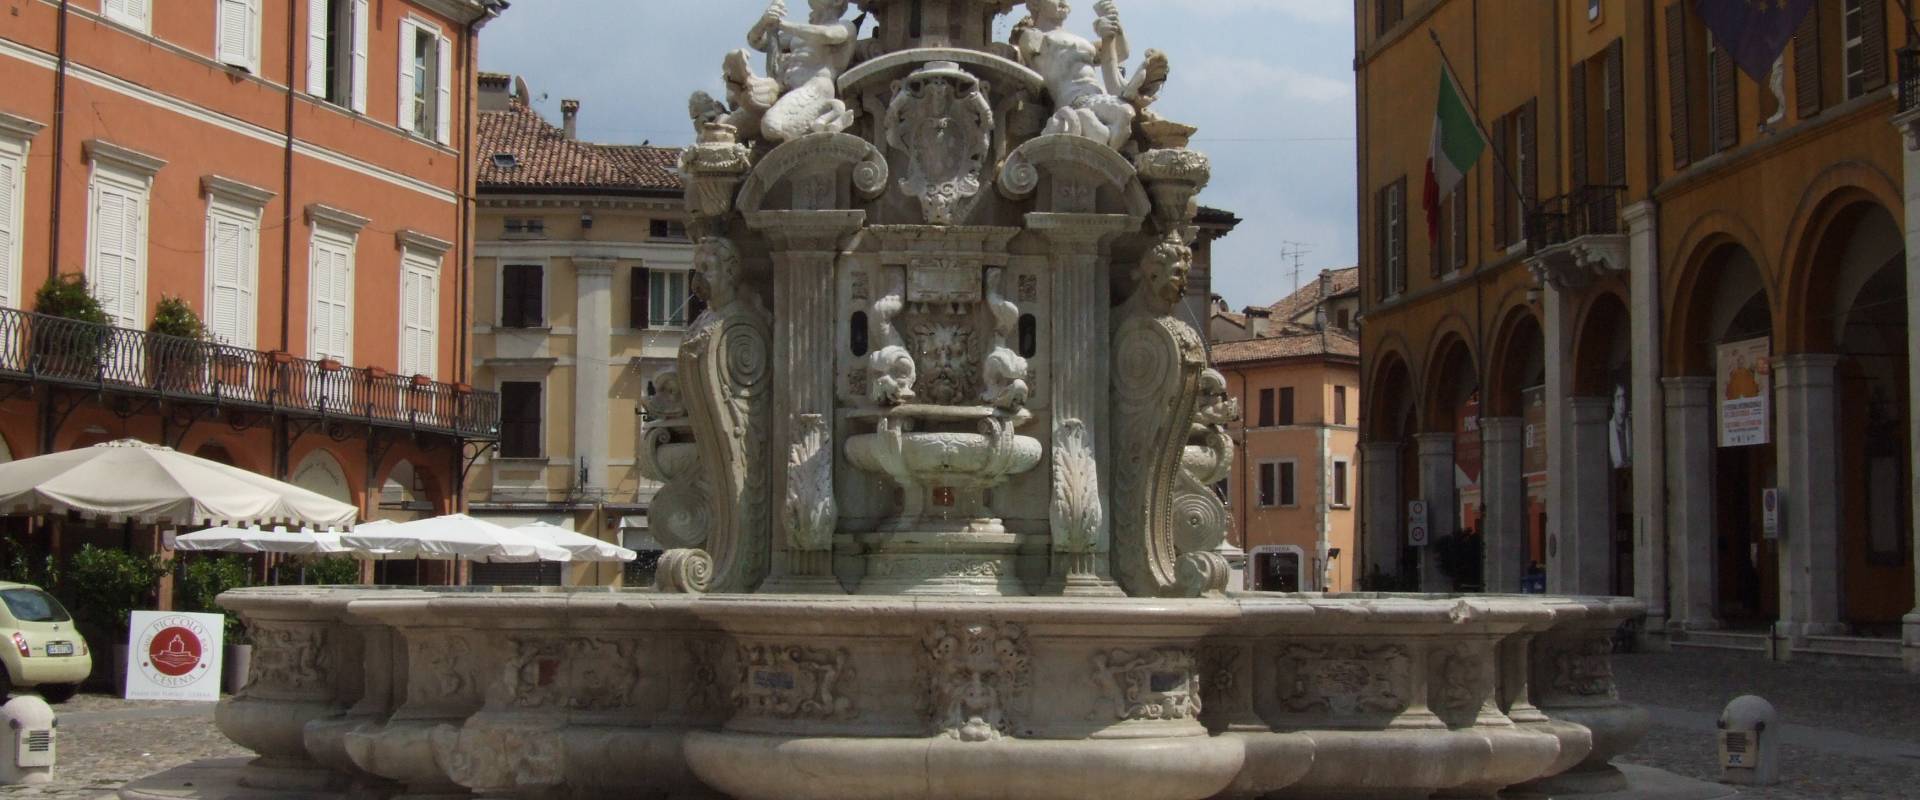 Fontana Masini - Cesena 5 foto di Diego Baglieri